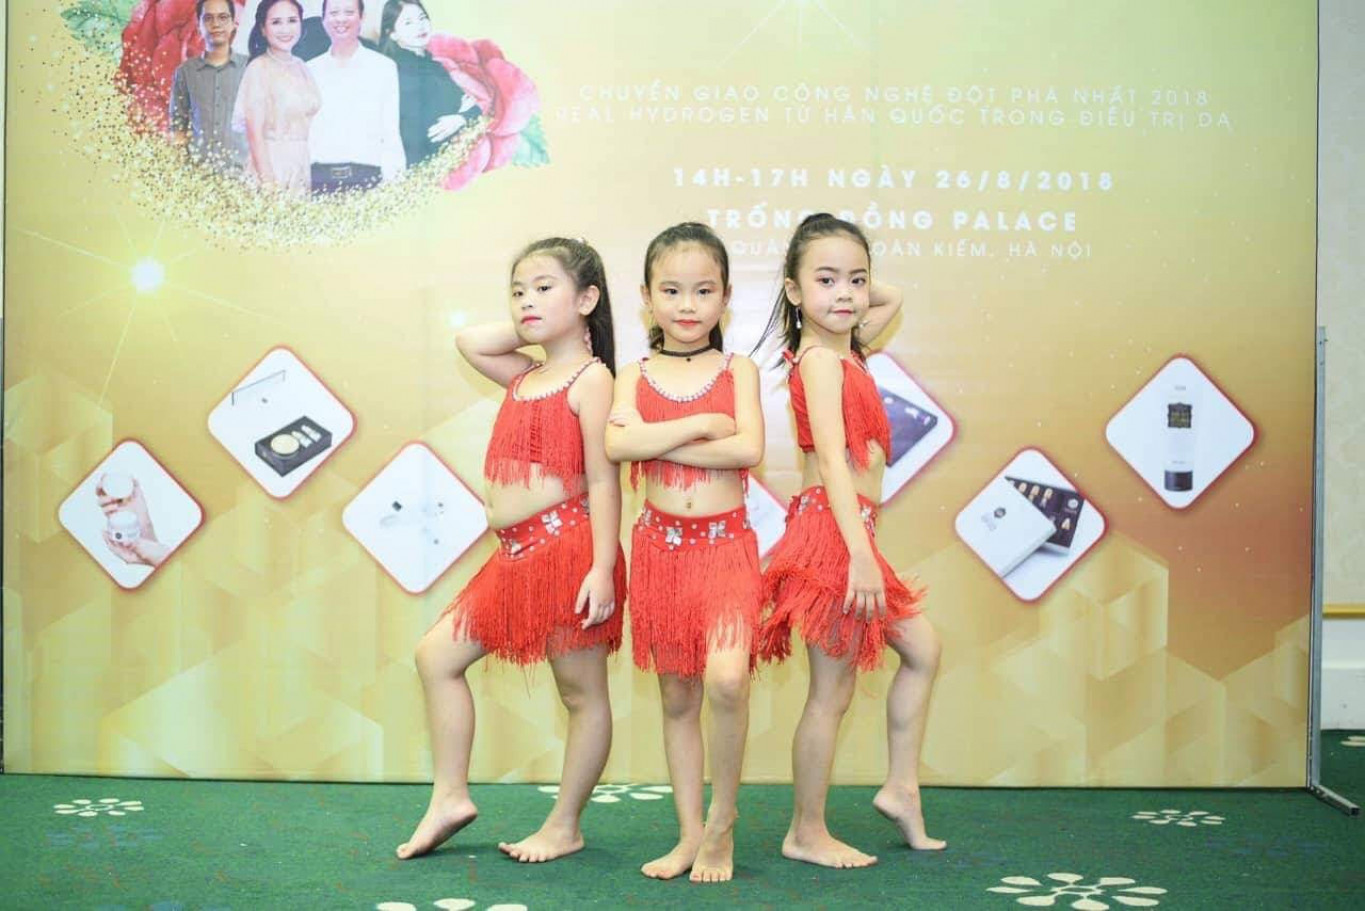 CLB Xalaka gồm 2 bạn nhỏ: Nguyễn Lê Phương Thảo và Bùi Sao Băng sẽ tham gia tiết mục múa Belly dance. 